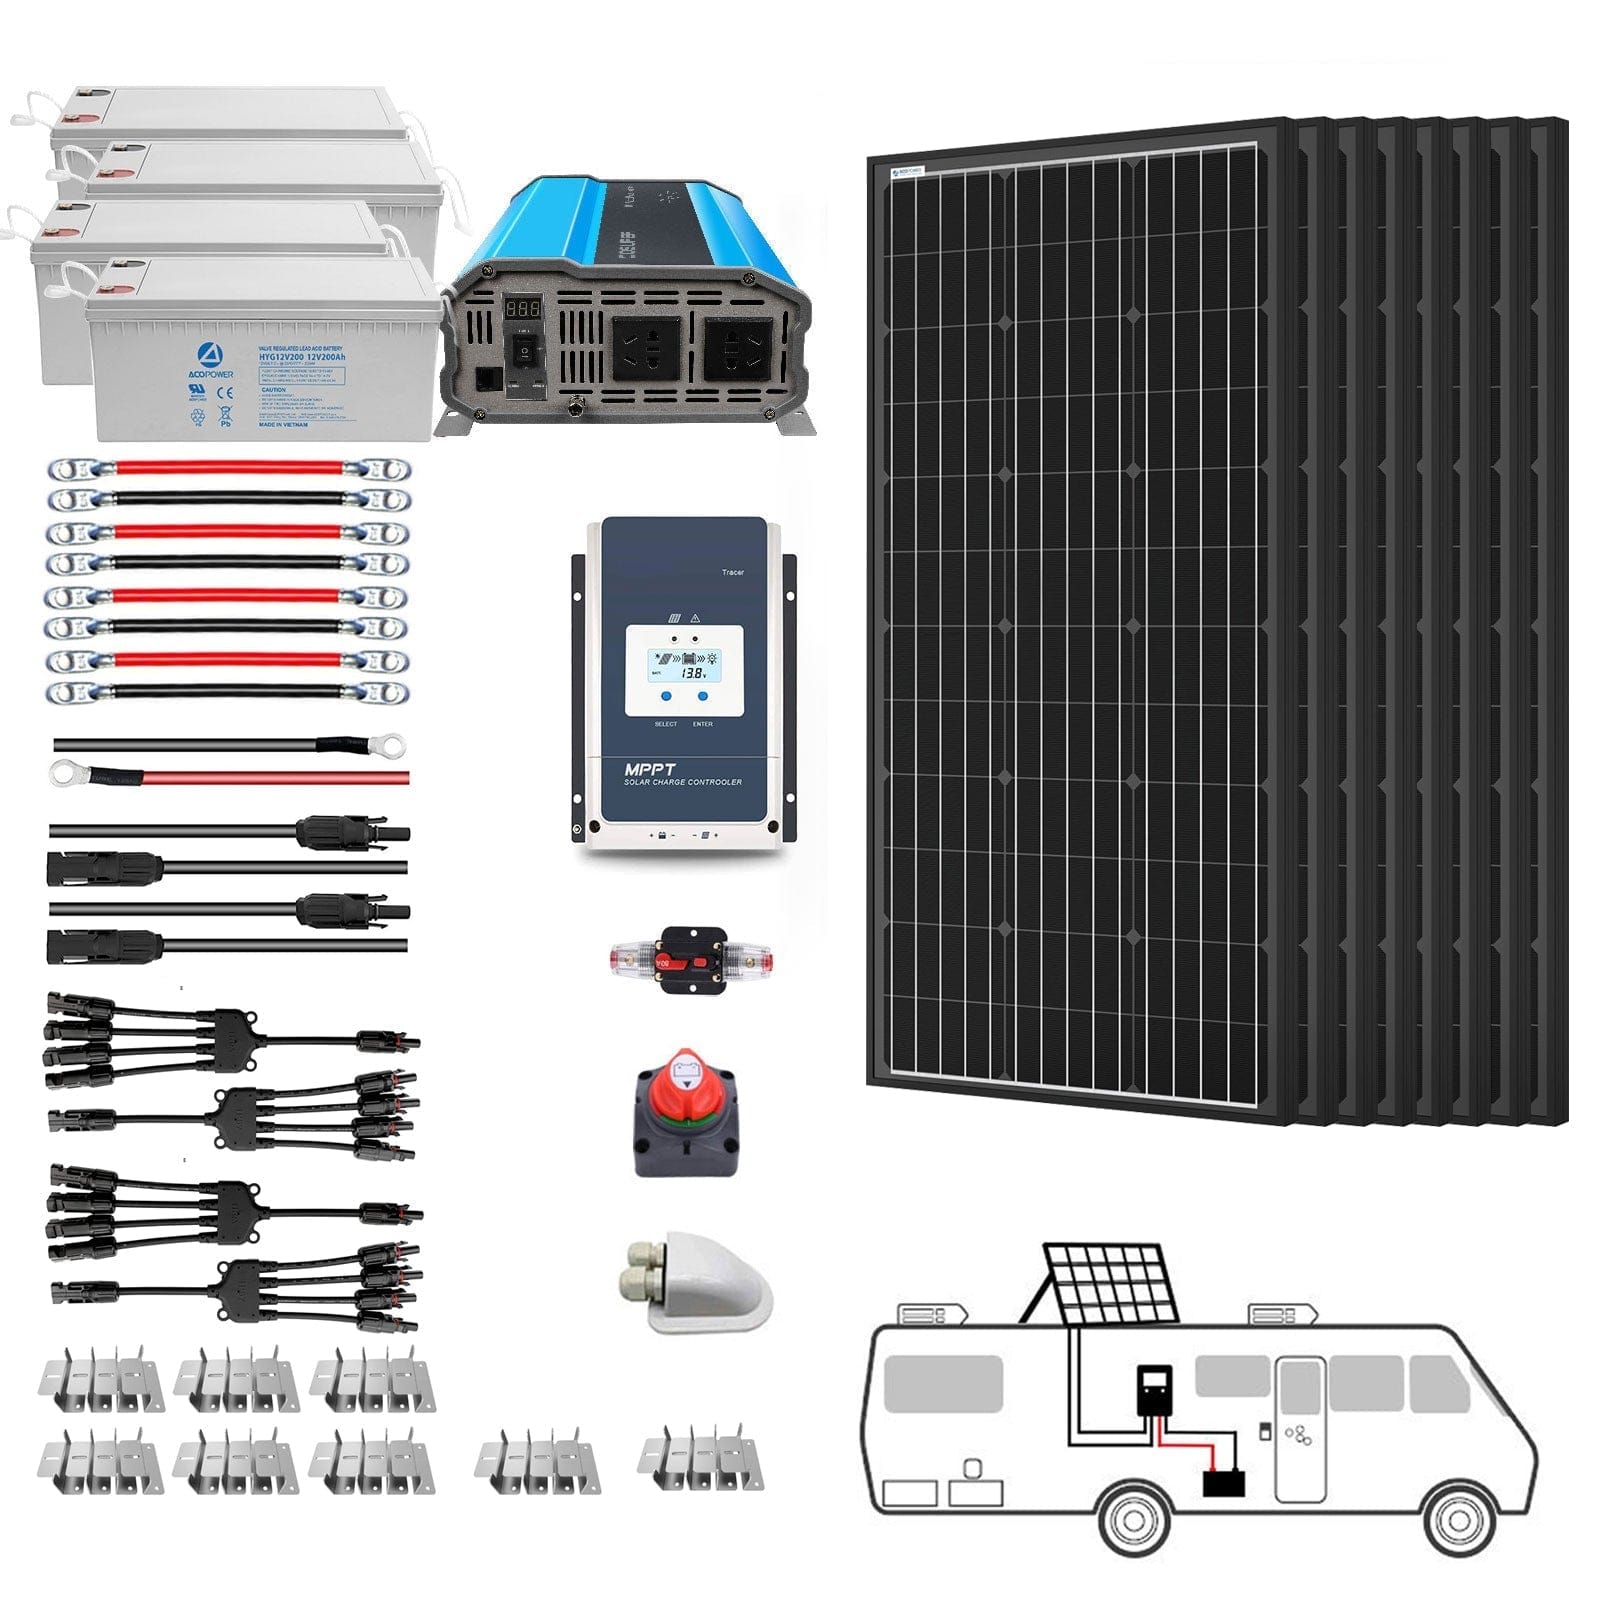 ACOPOWER 800W Monocrystalline RV Solar Power System HY-800AH3KW-800WMB